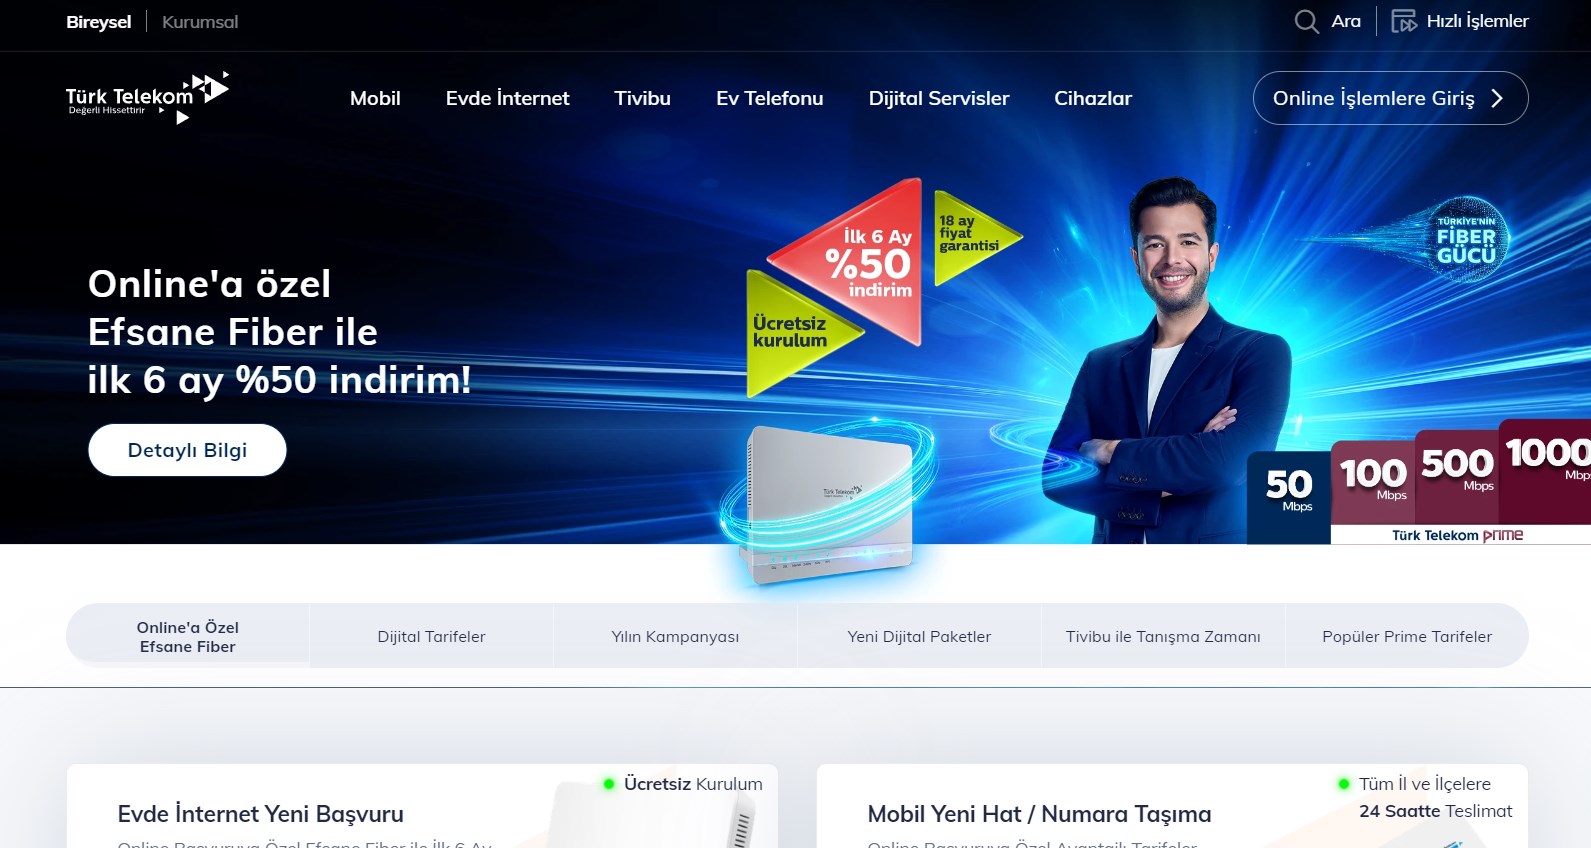 Türk Telekom'dan yapay zeka destekli erişilebilirlik geliştirmesi